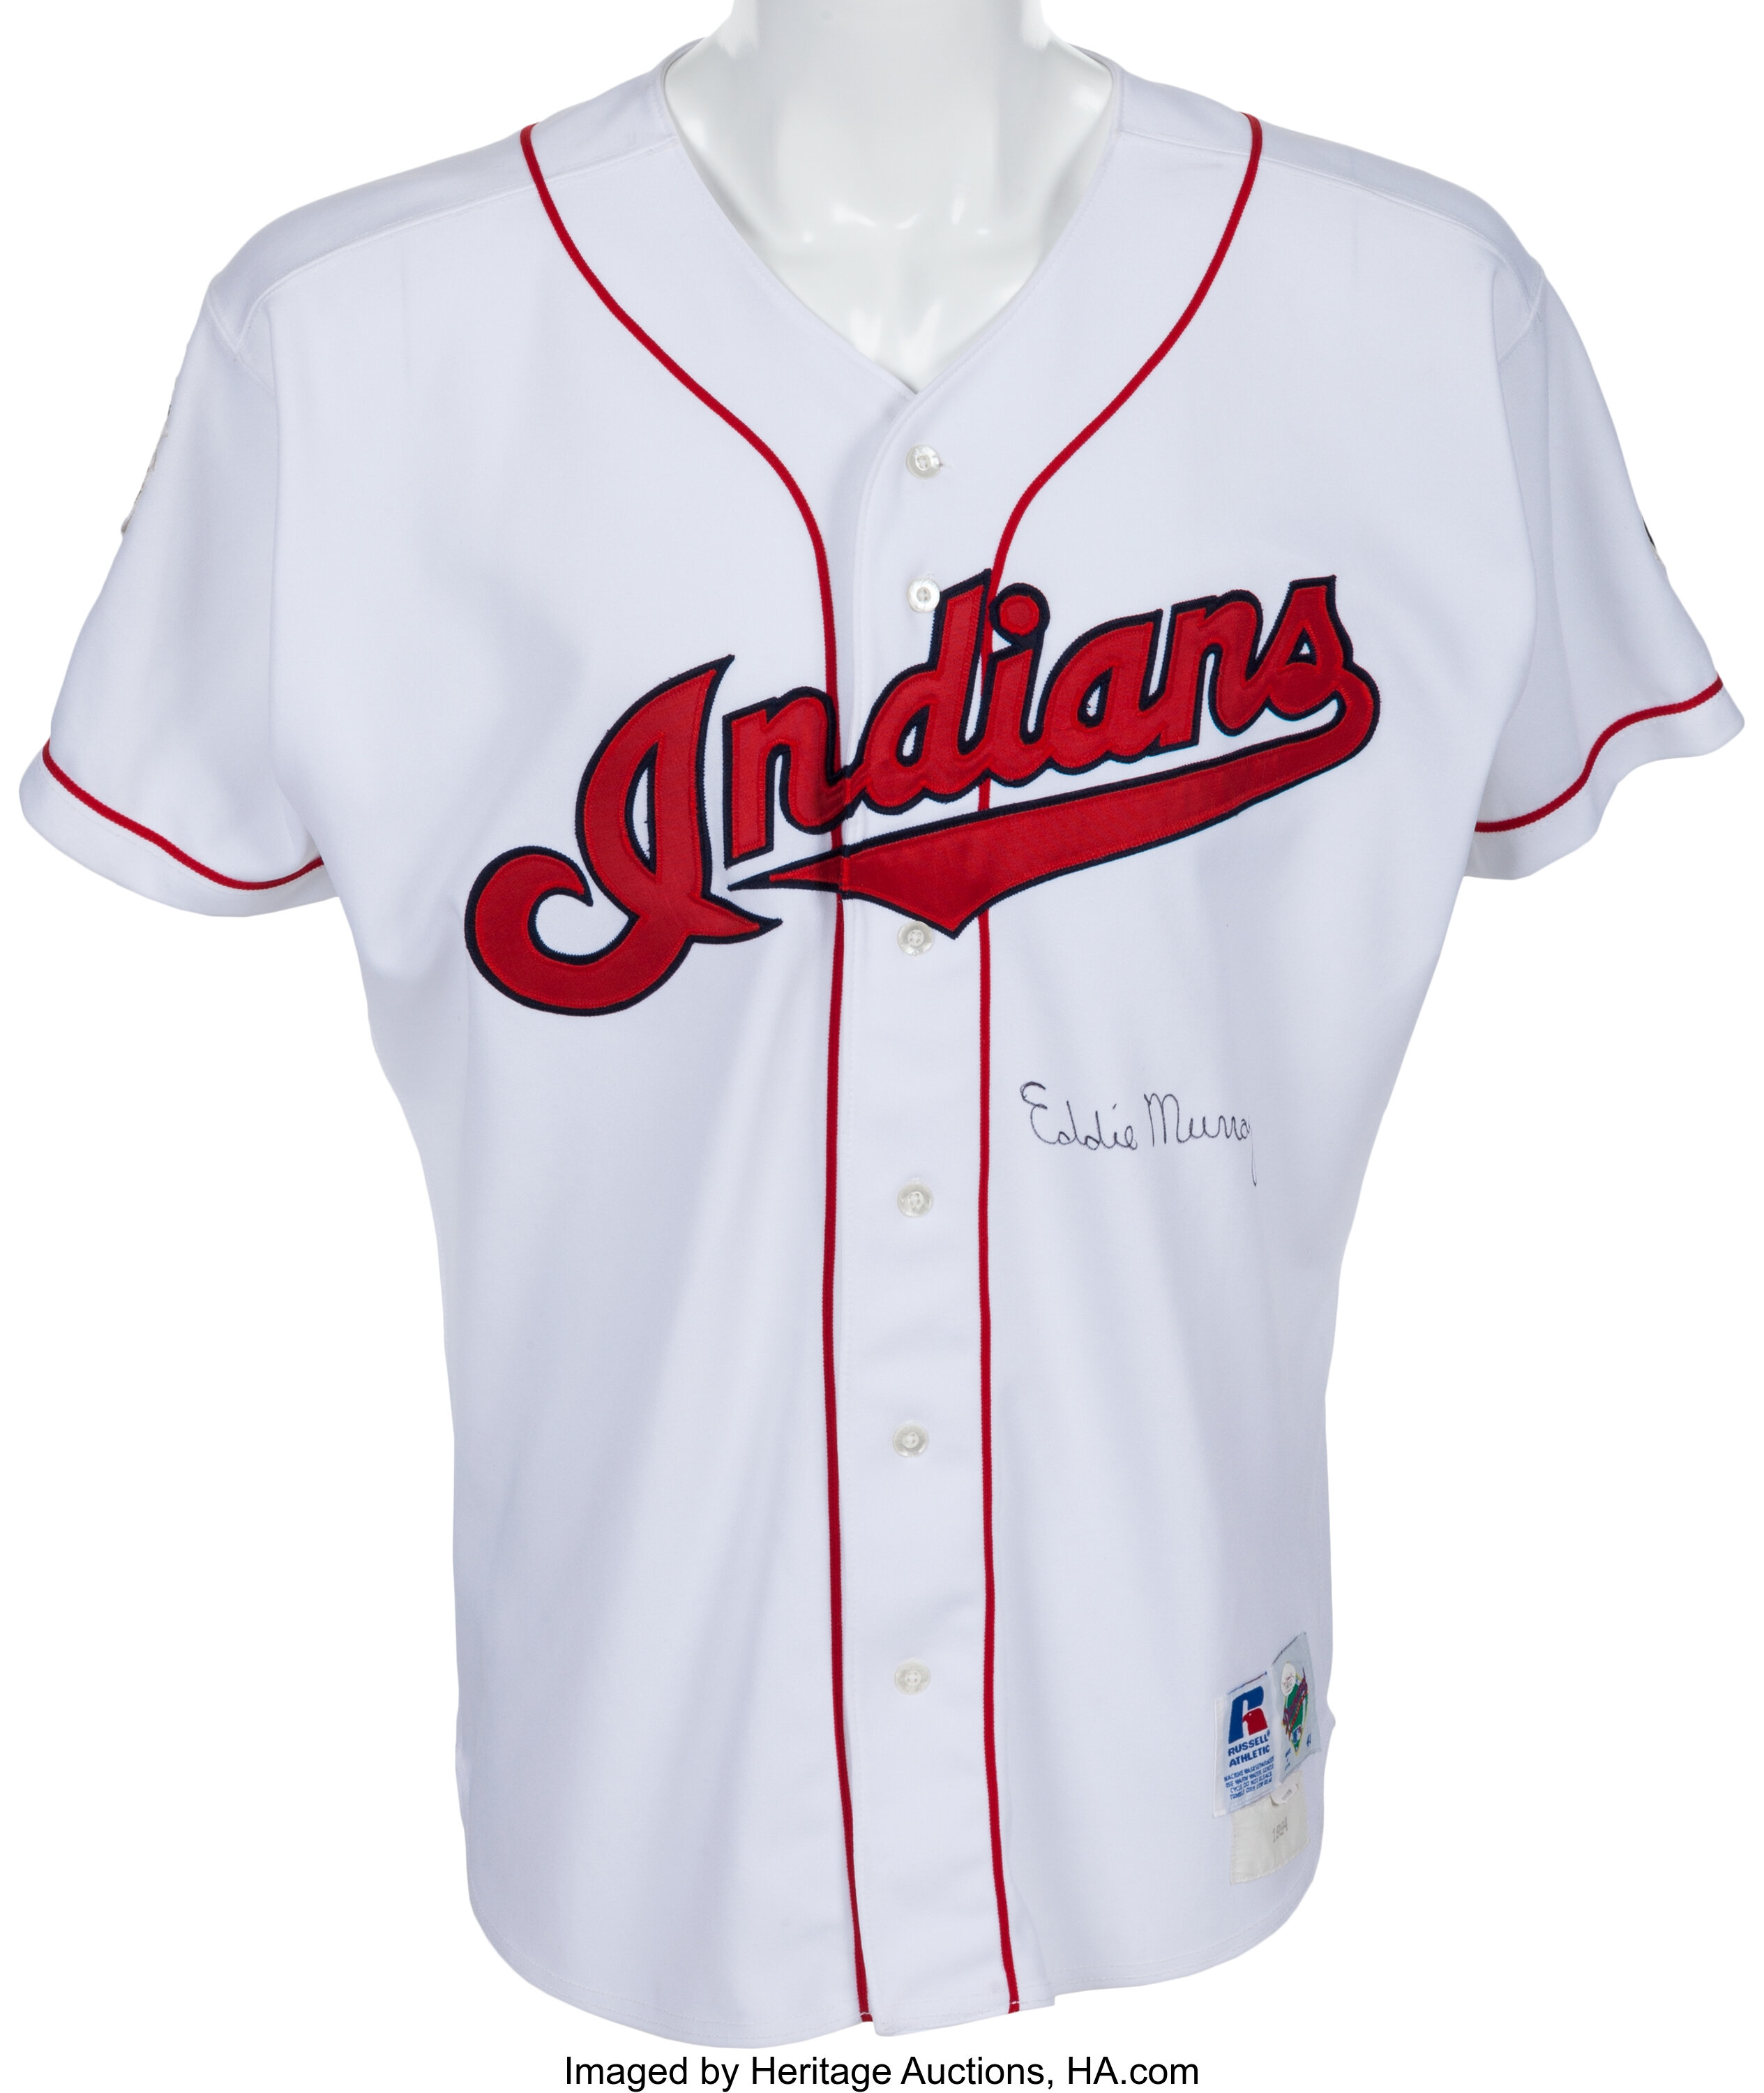 Cleveland Indians unveil new uniform option, updates to existing uniforms